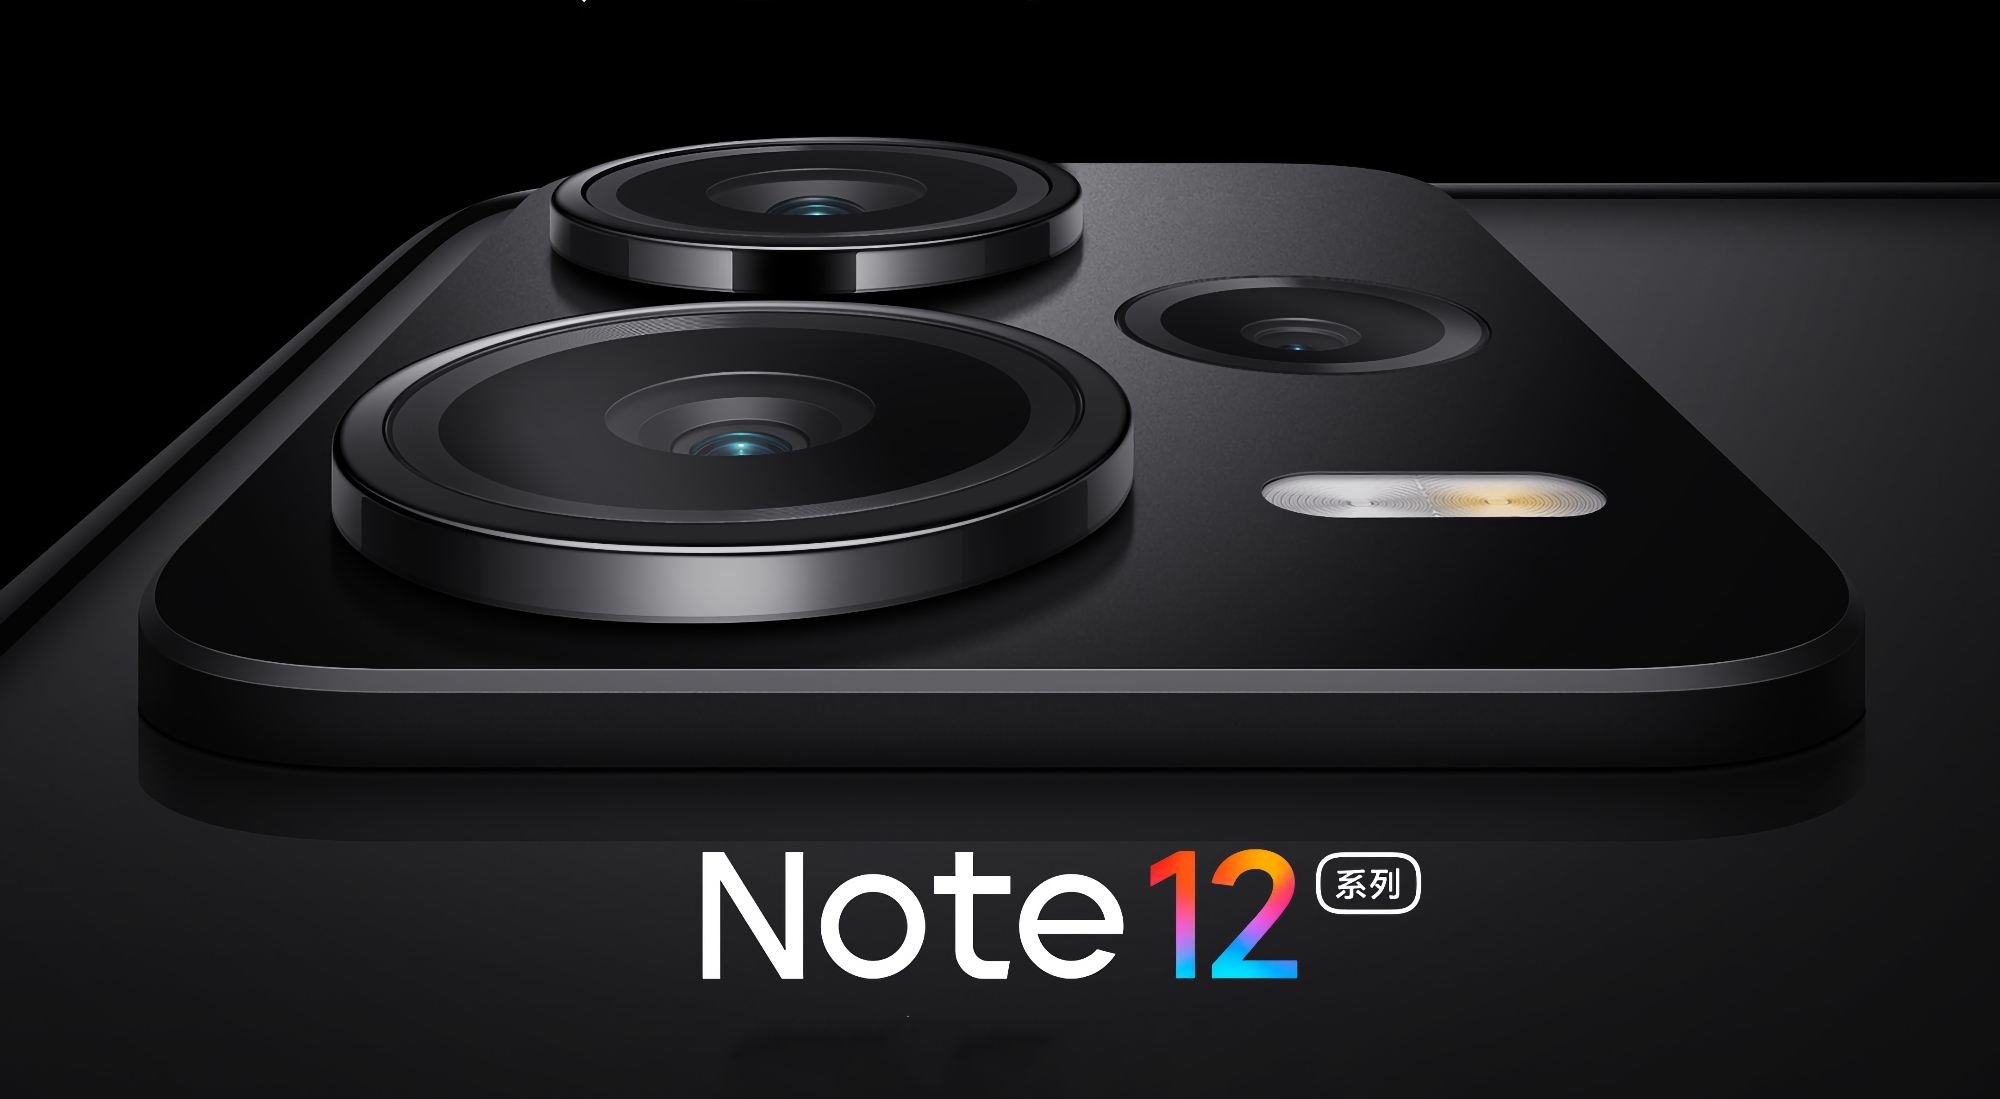 Come OnePlus 10T e ASUS Zefone 9: Uno degli smartphone Redmi Note 12 avrà una fotocamera con un modulo Sony IMX766